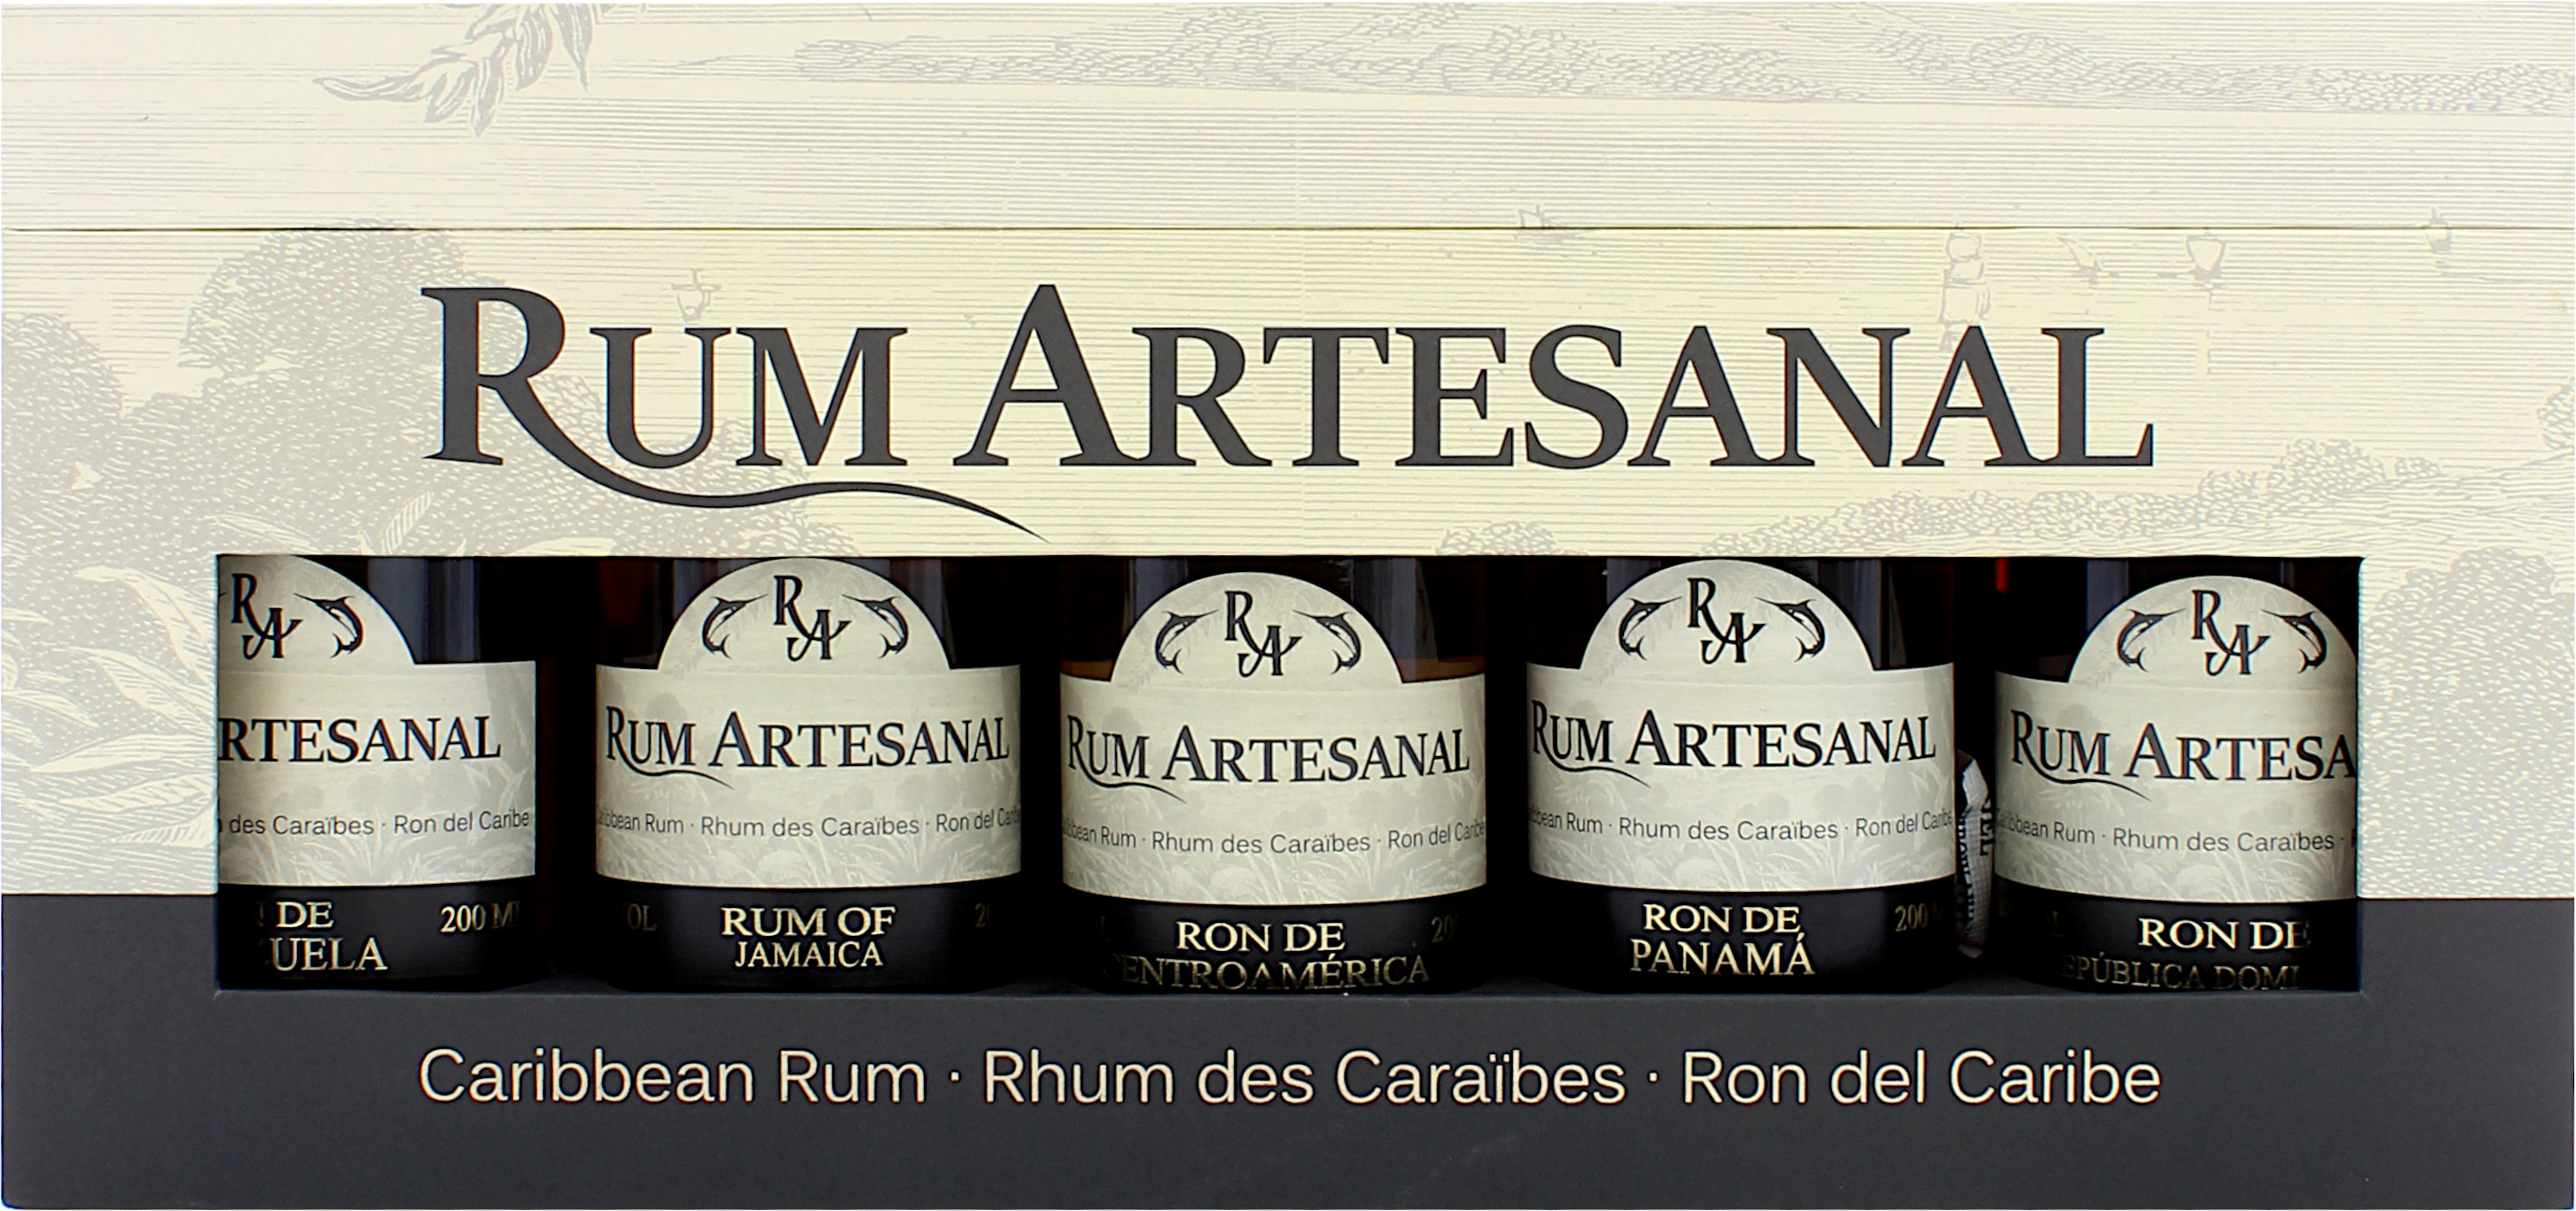 Rum Artesanal Tasting Box 40.0% 5 x 0,2l